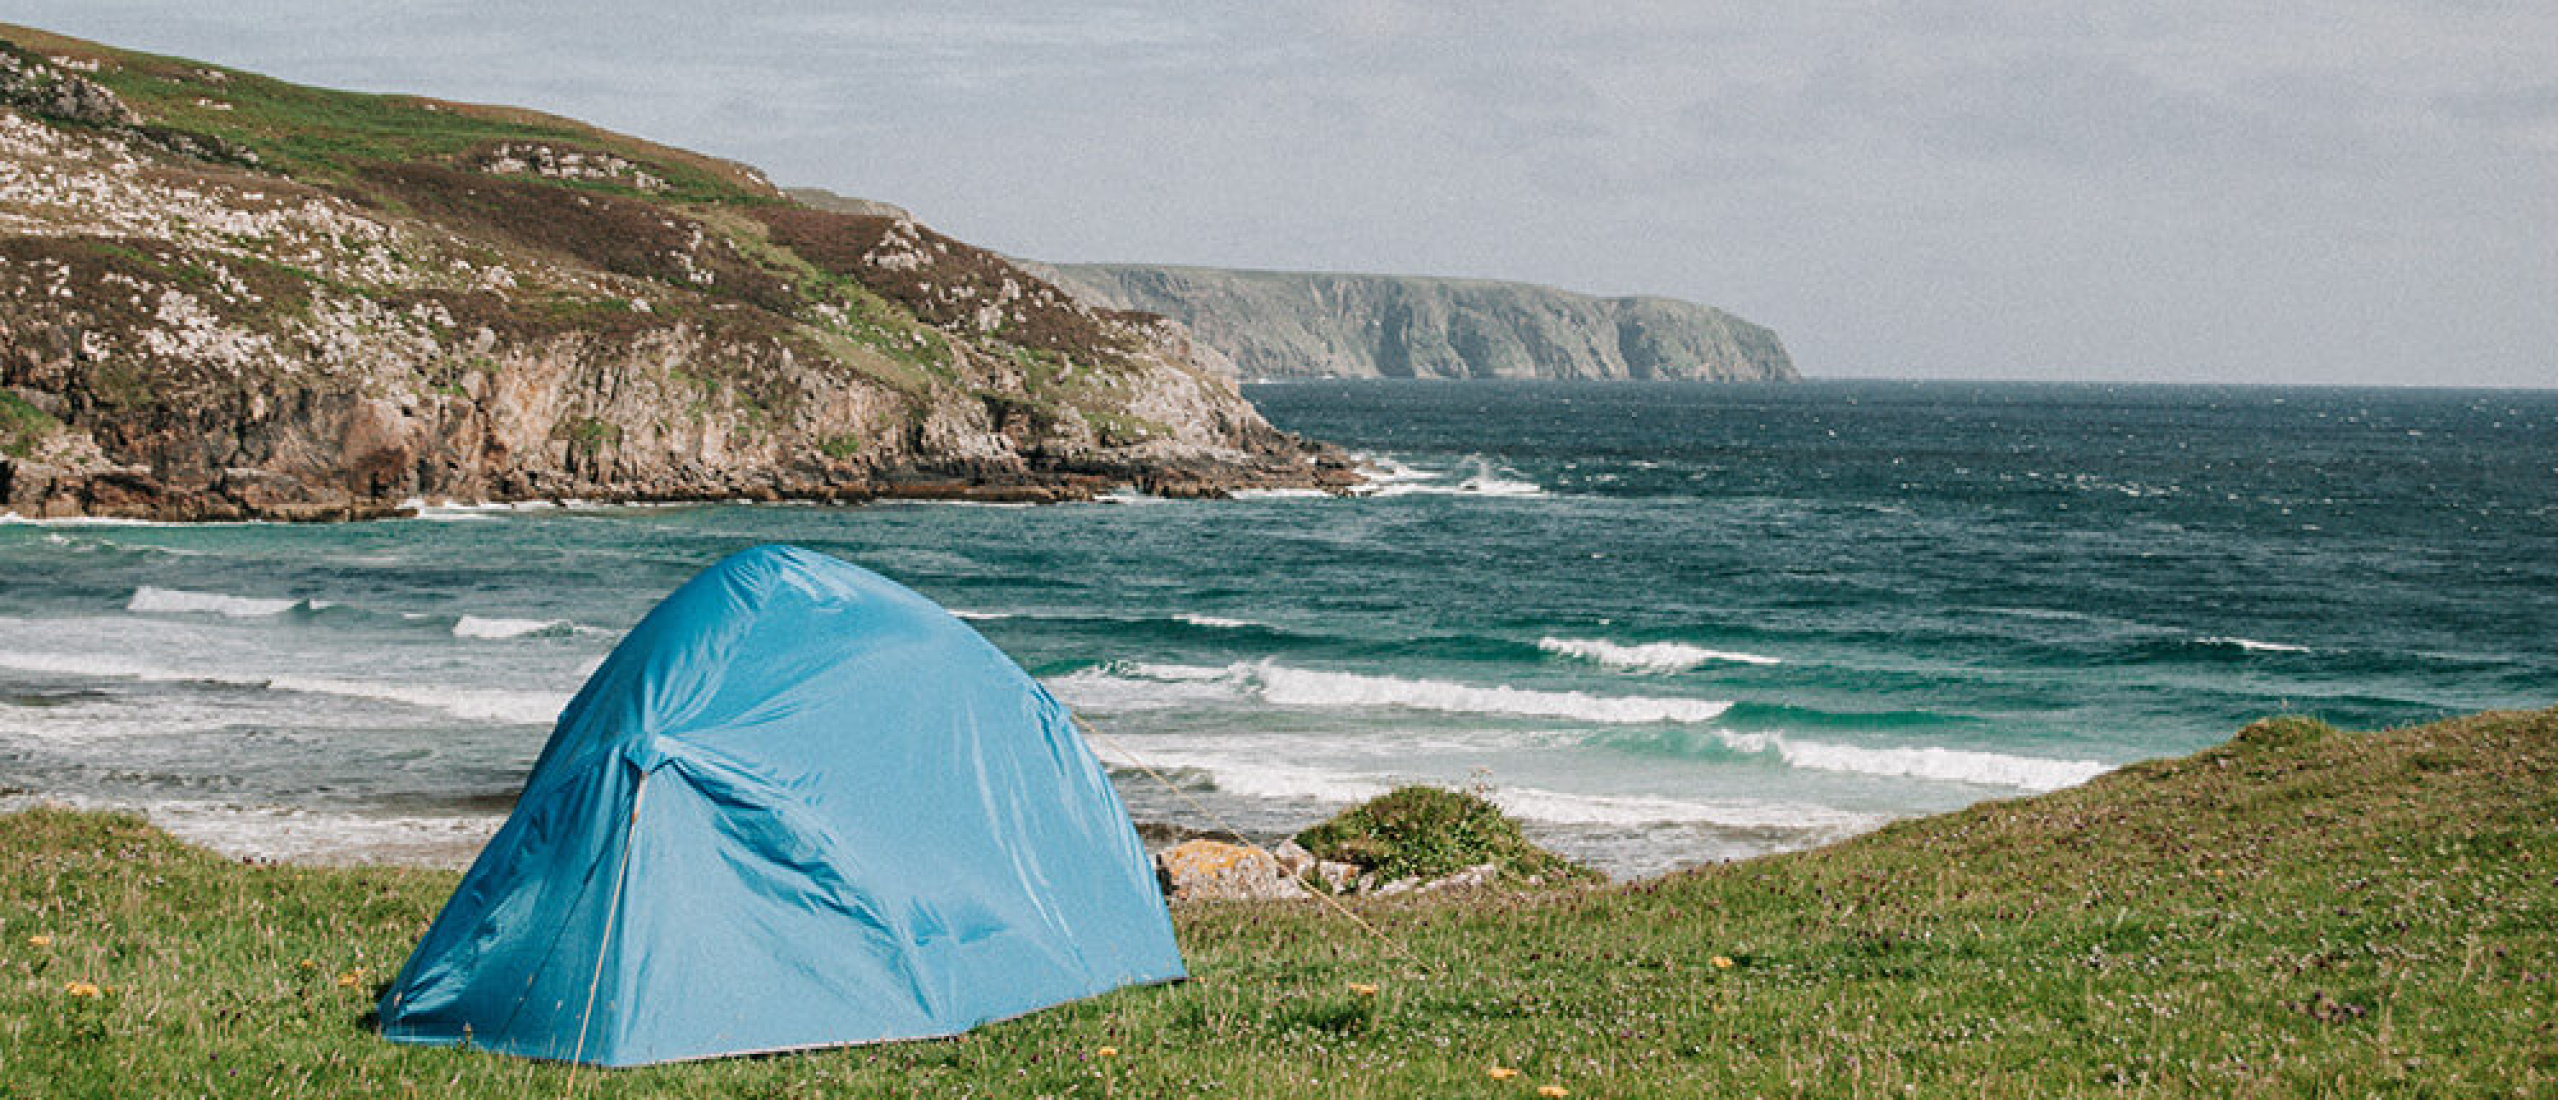 Wildkamperen met je tent in Schotland: dit moet je weten